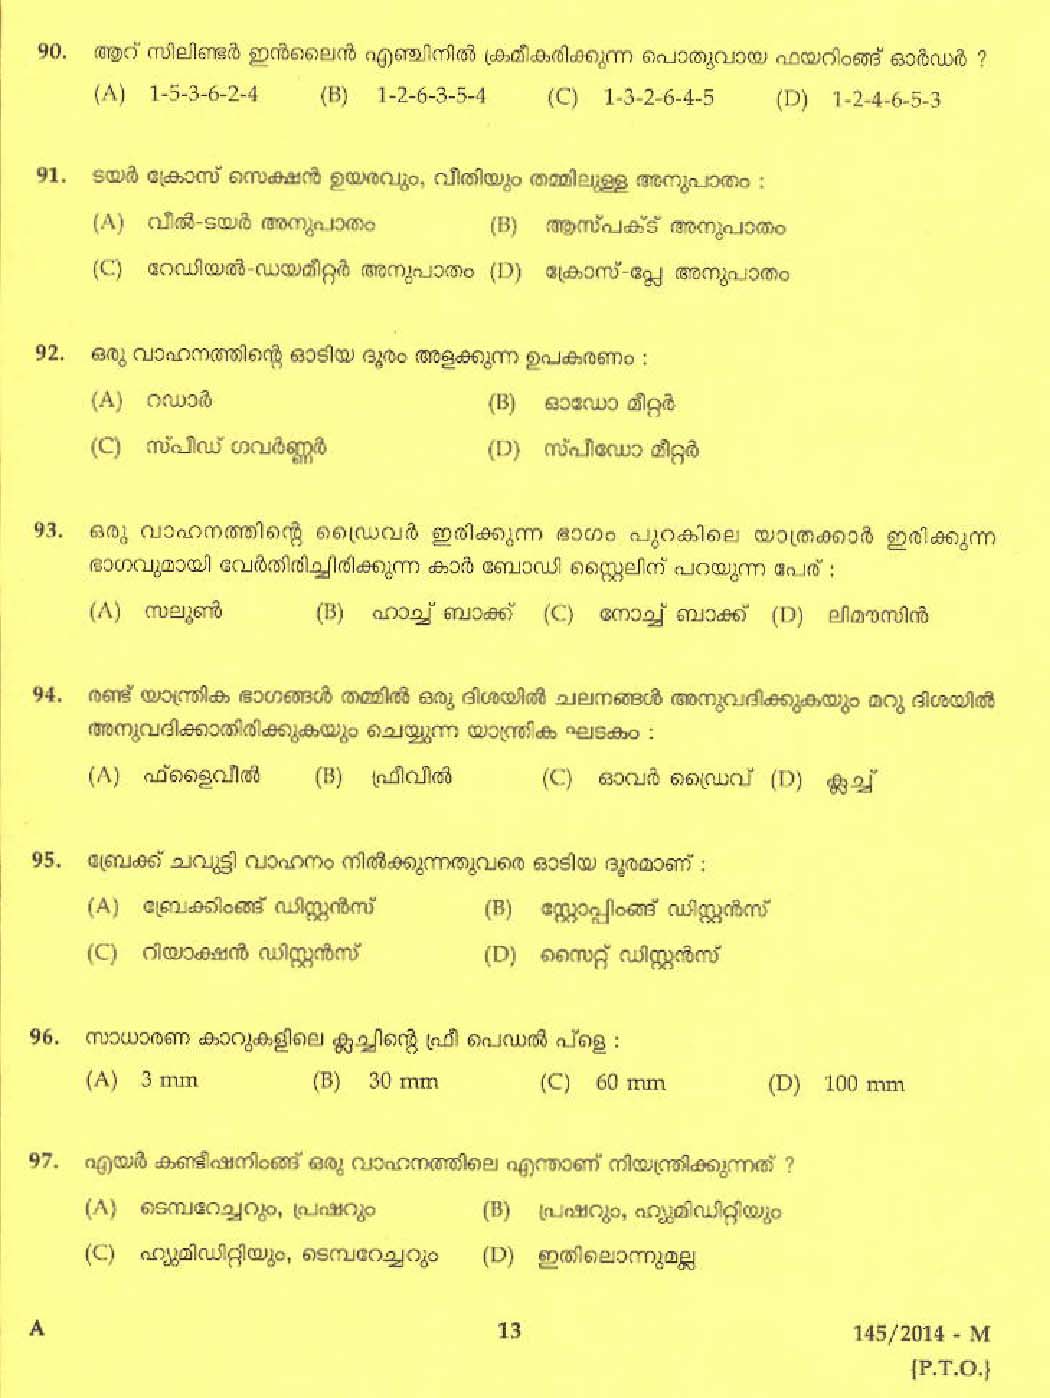 Kerala PSC Driver Grade II Exam 2014 Question Paper Code 1452014 M 11